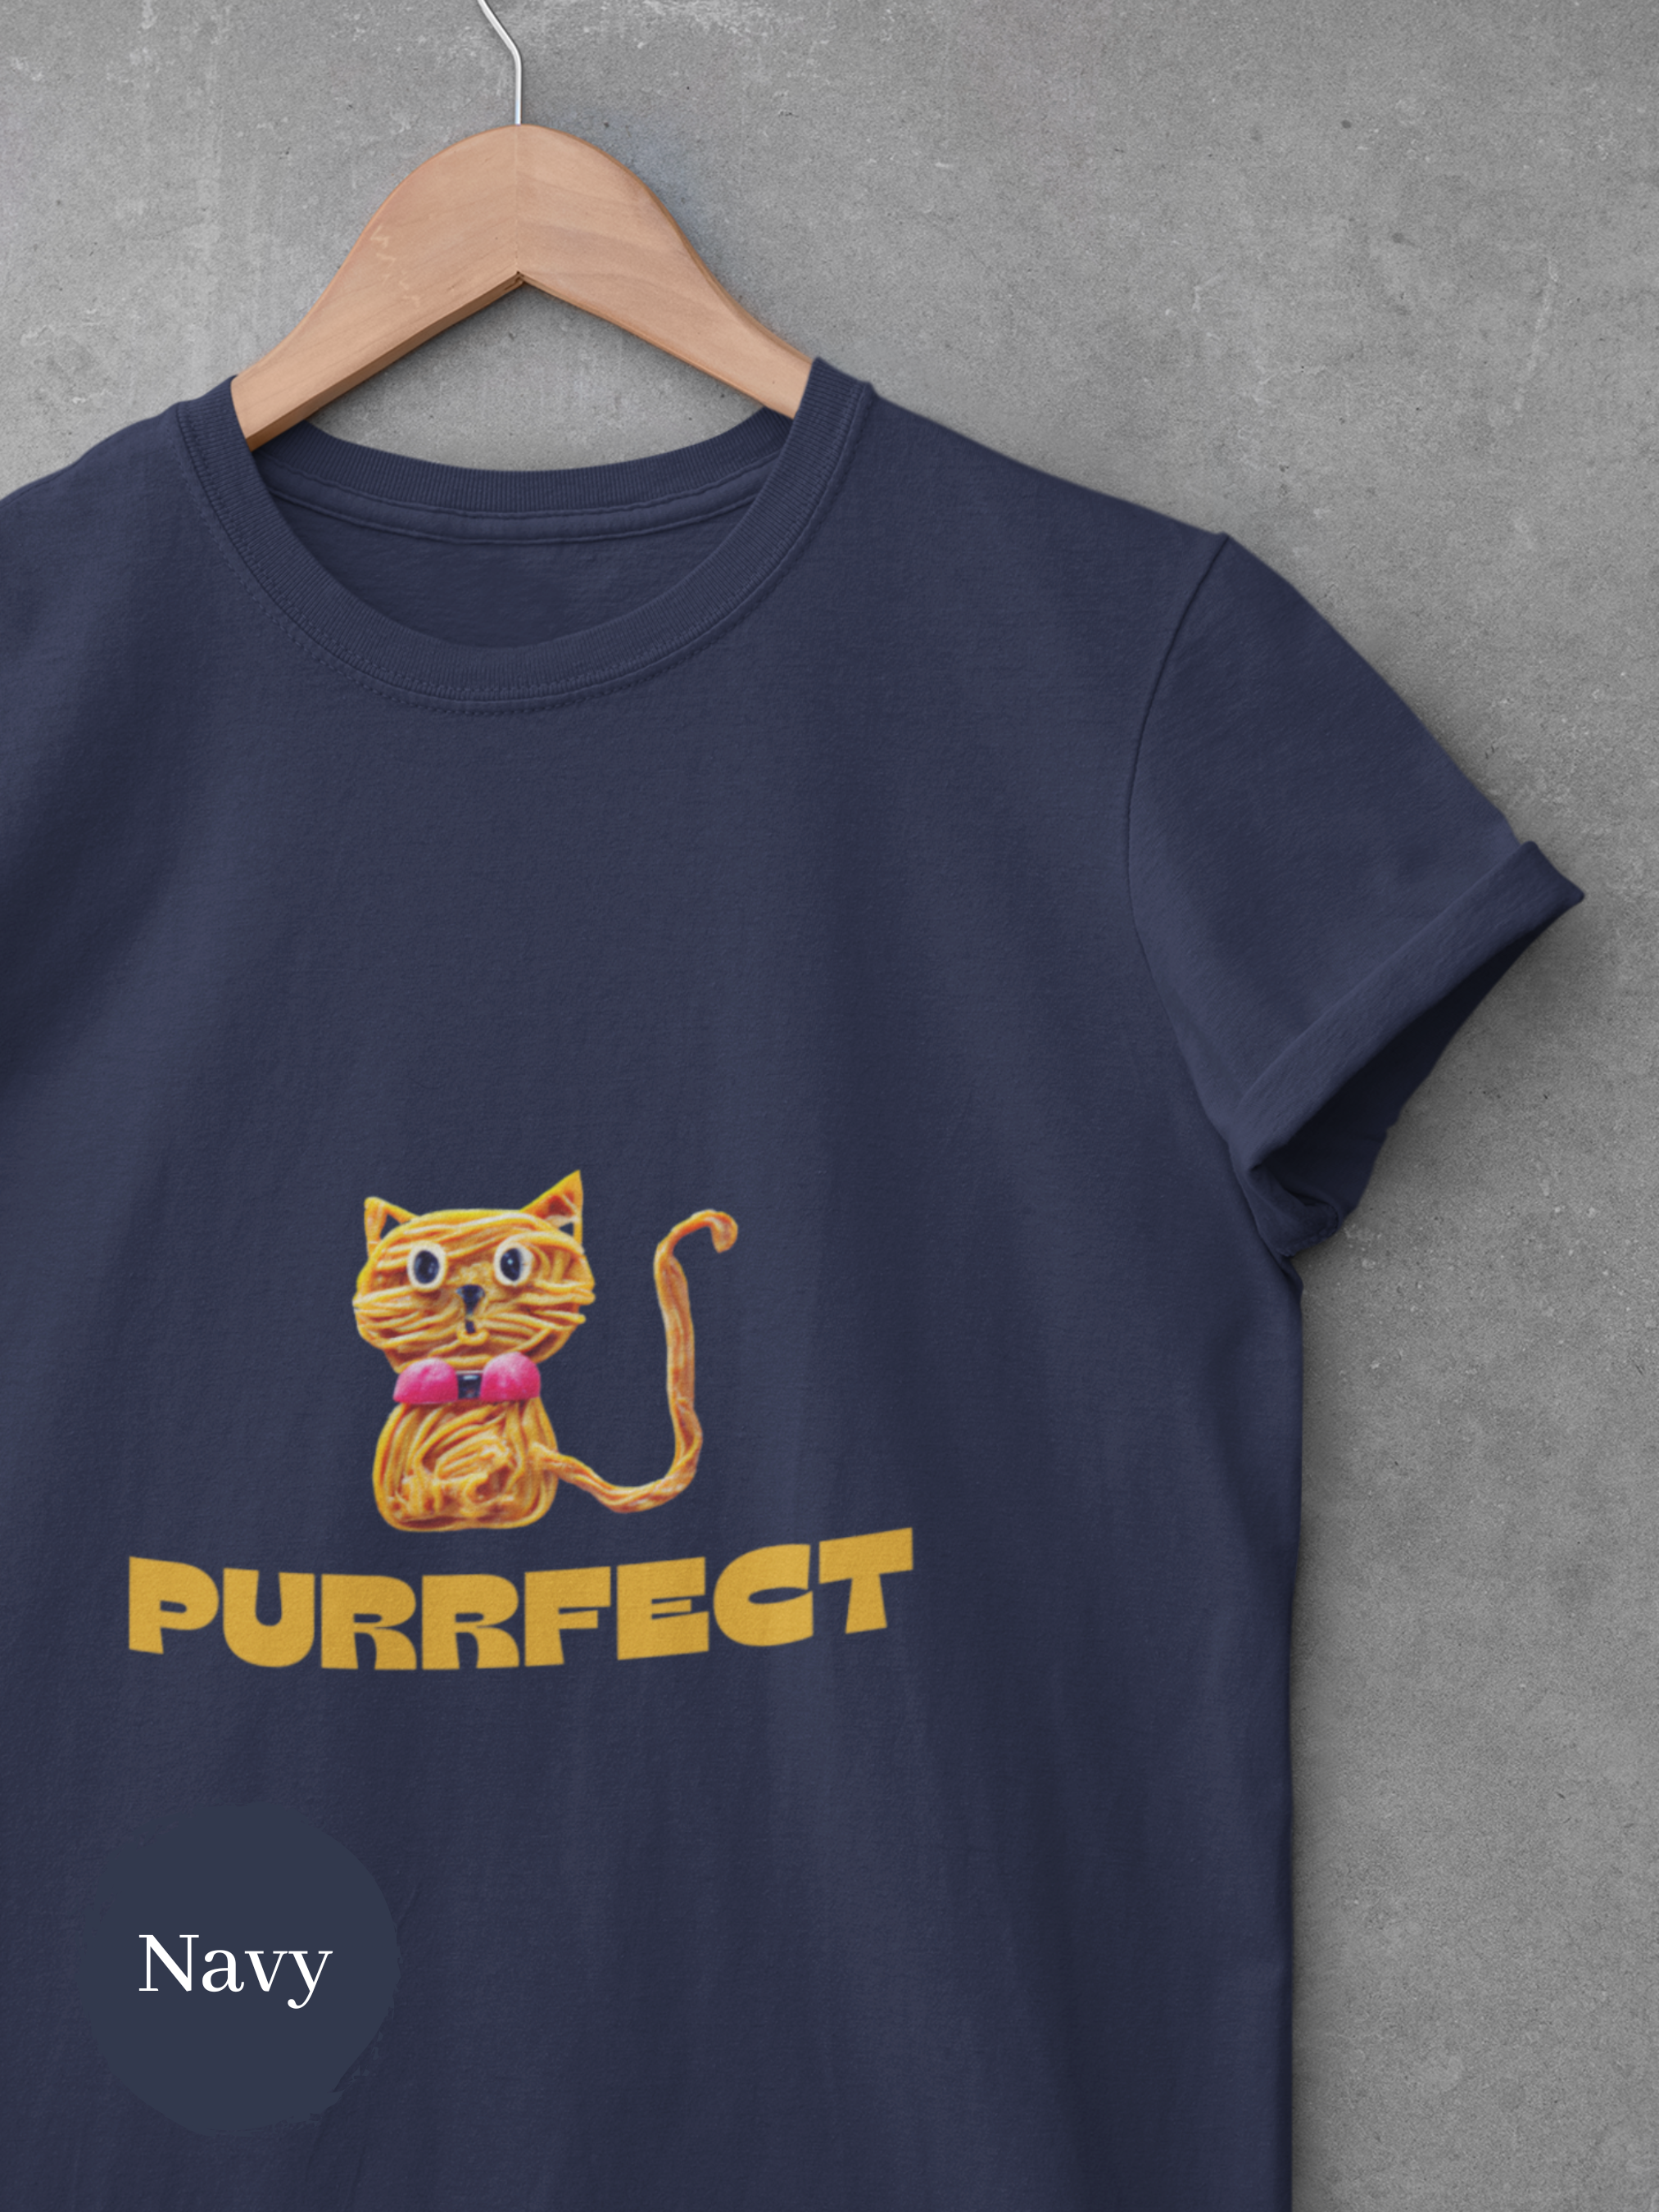 Ramen Art Purrfect T-Shirt - Cute Cat Made of Noodles